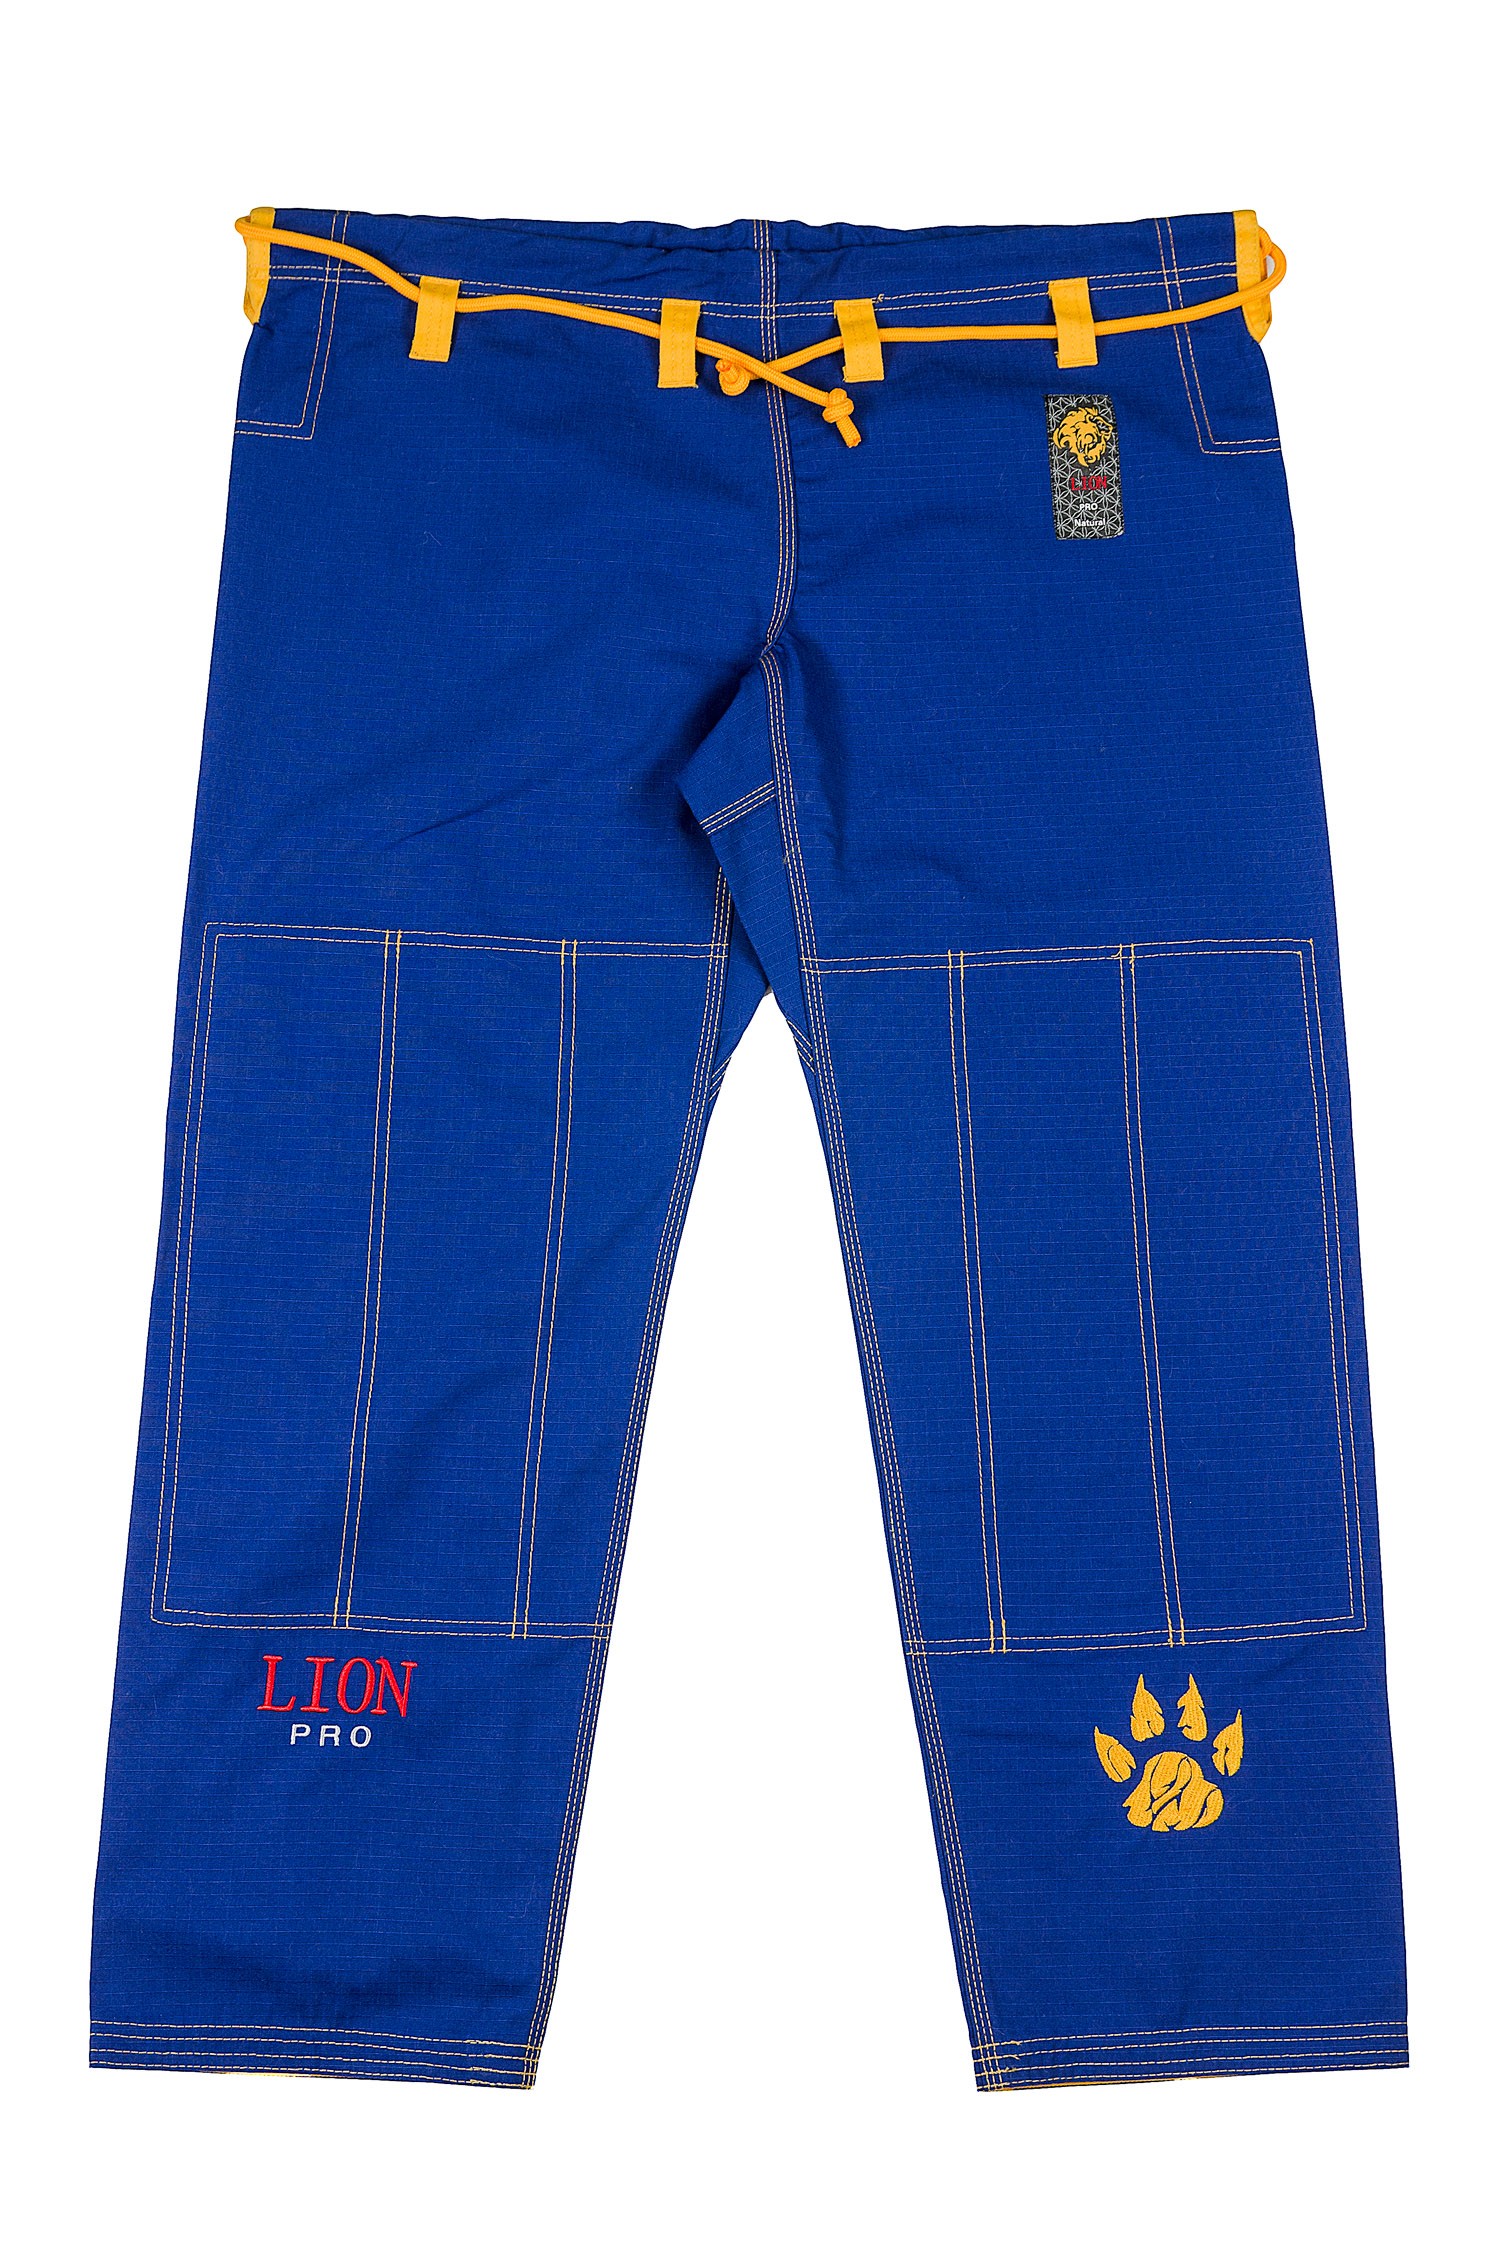 Штаны для gi bjj lion pro - blue